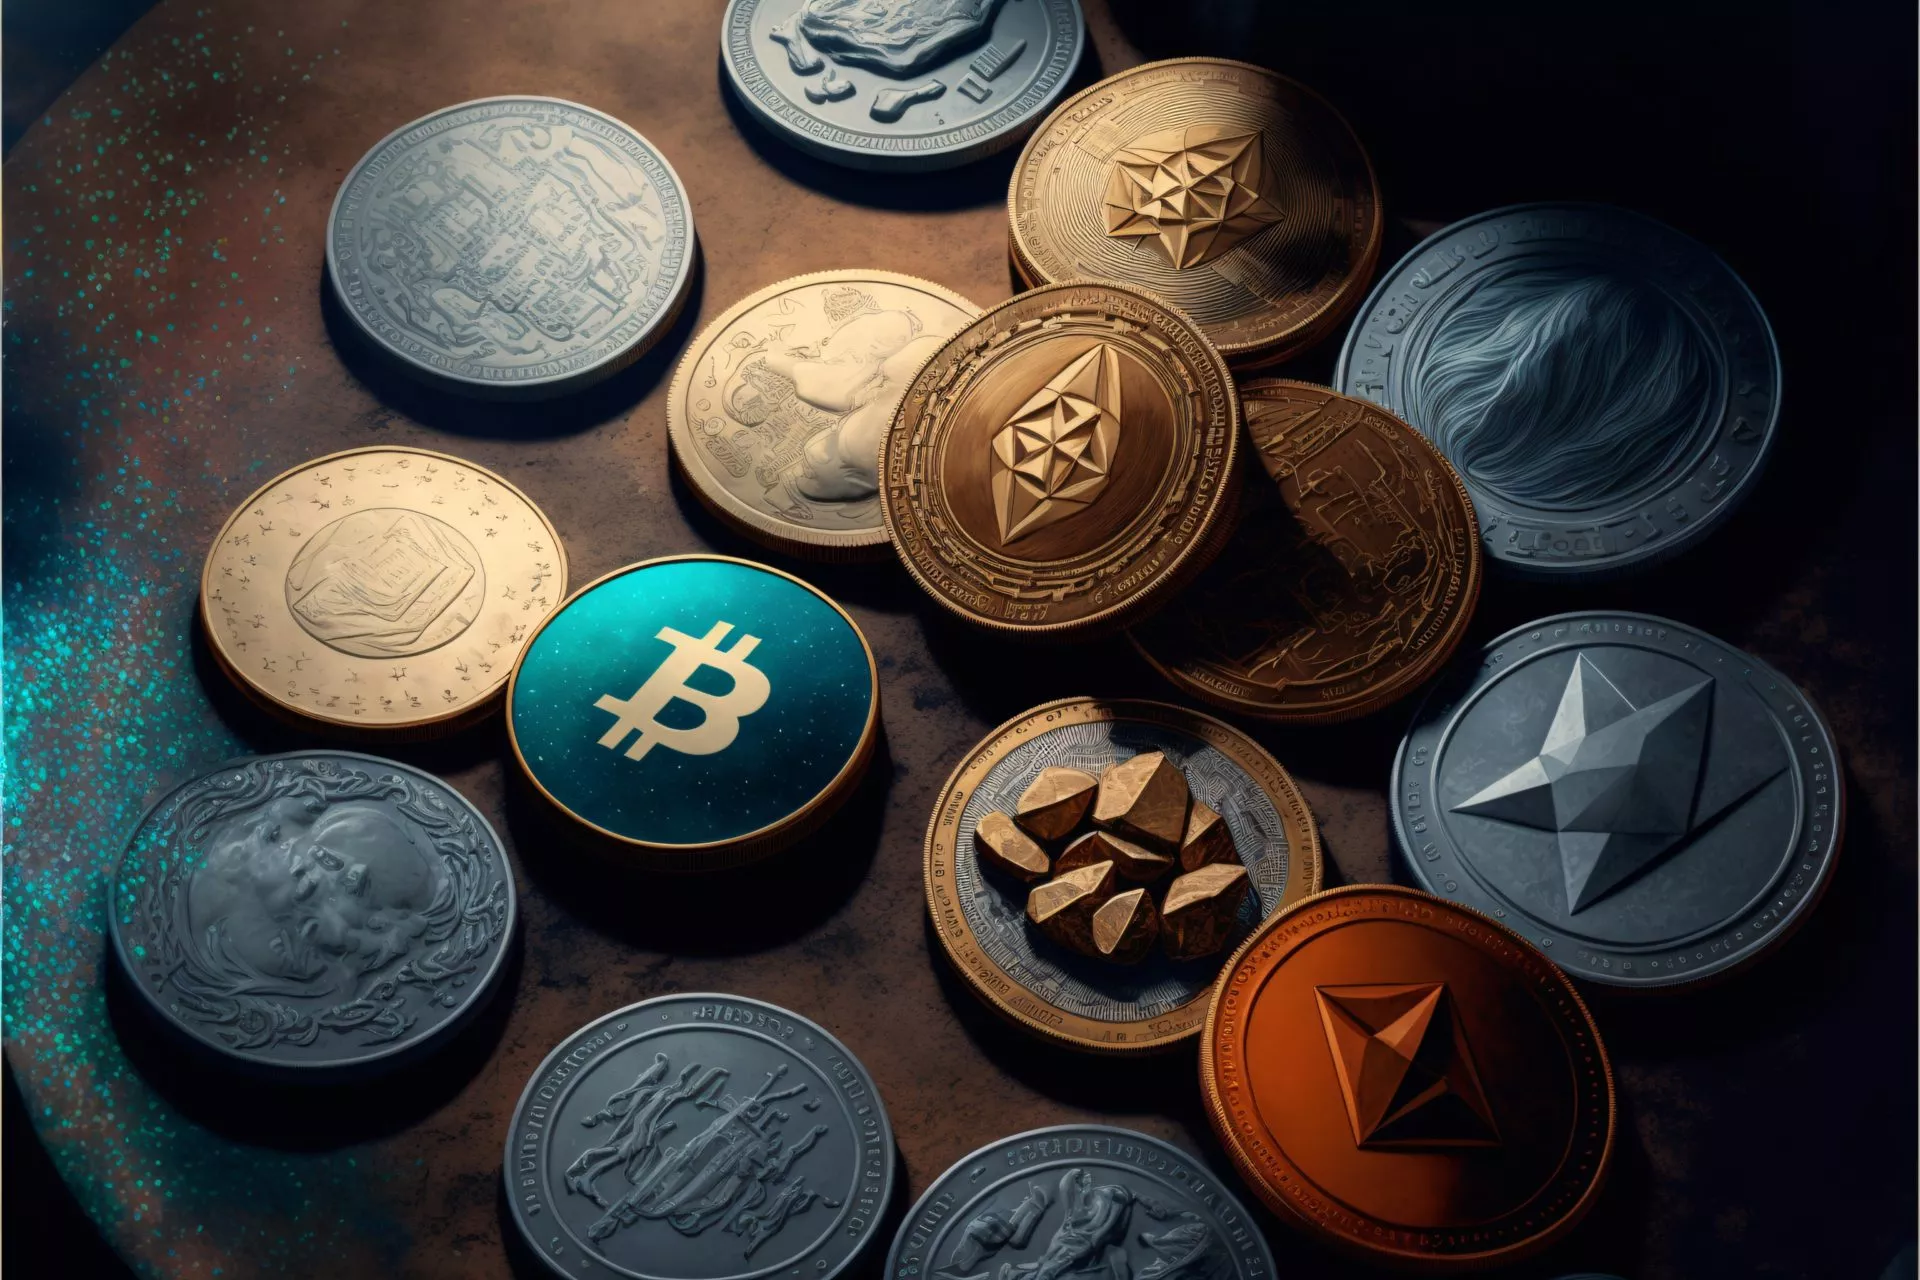 $750 miljoen aan vergrendelde crypto-tokens die in december worden vrijgegeven